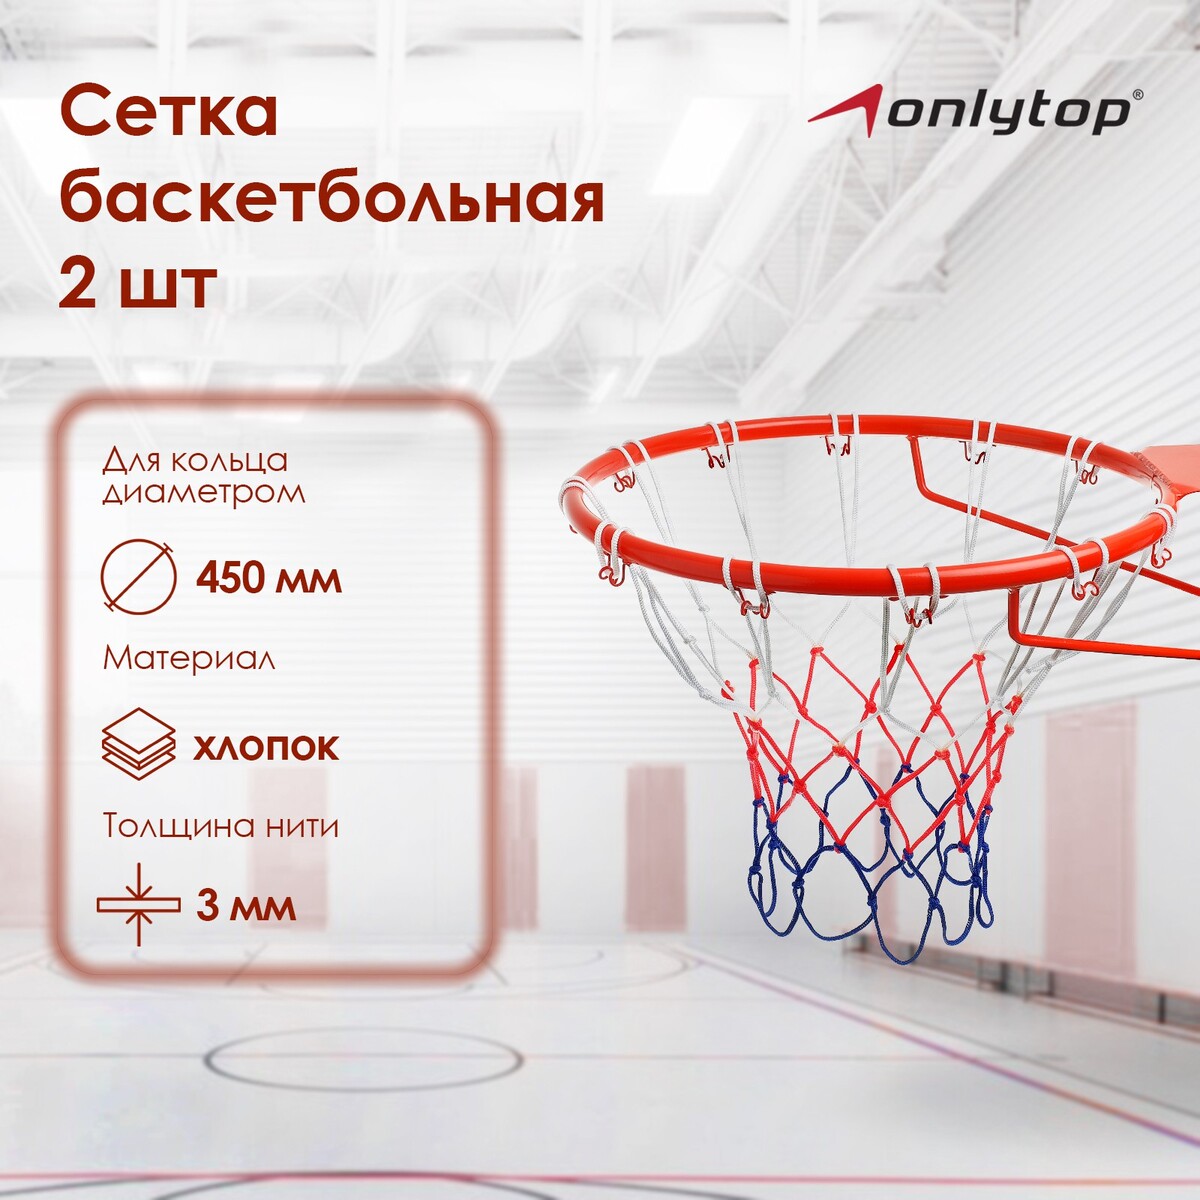 Сетка баскетбольная onlytop, 50 см, нить 3 мм, 2 шт. сетка для настольного тенниса onlytop 184х14 см с крепежом